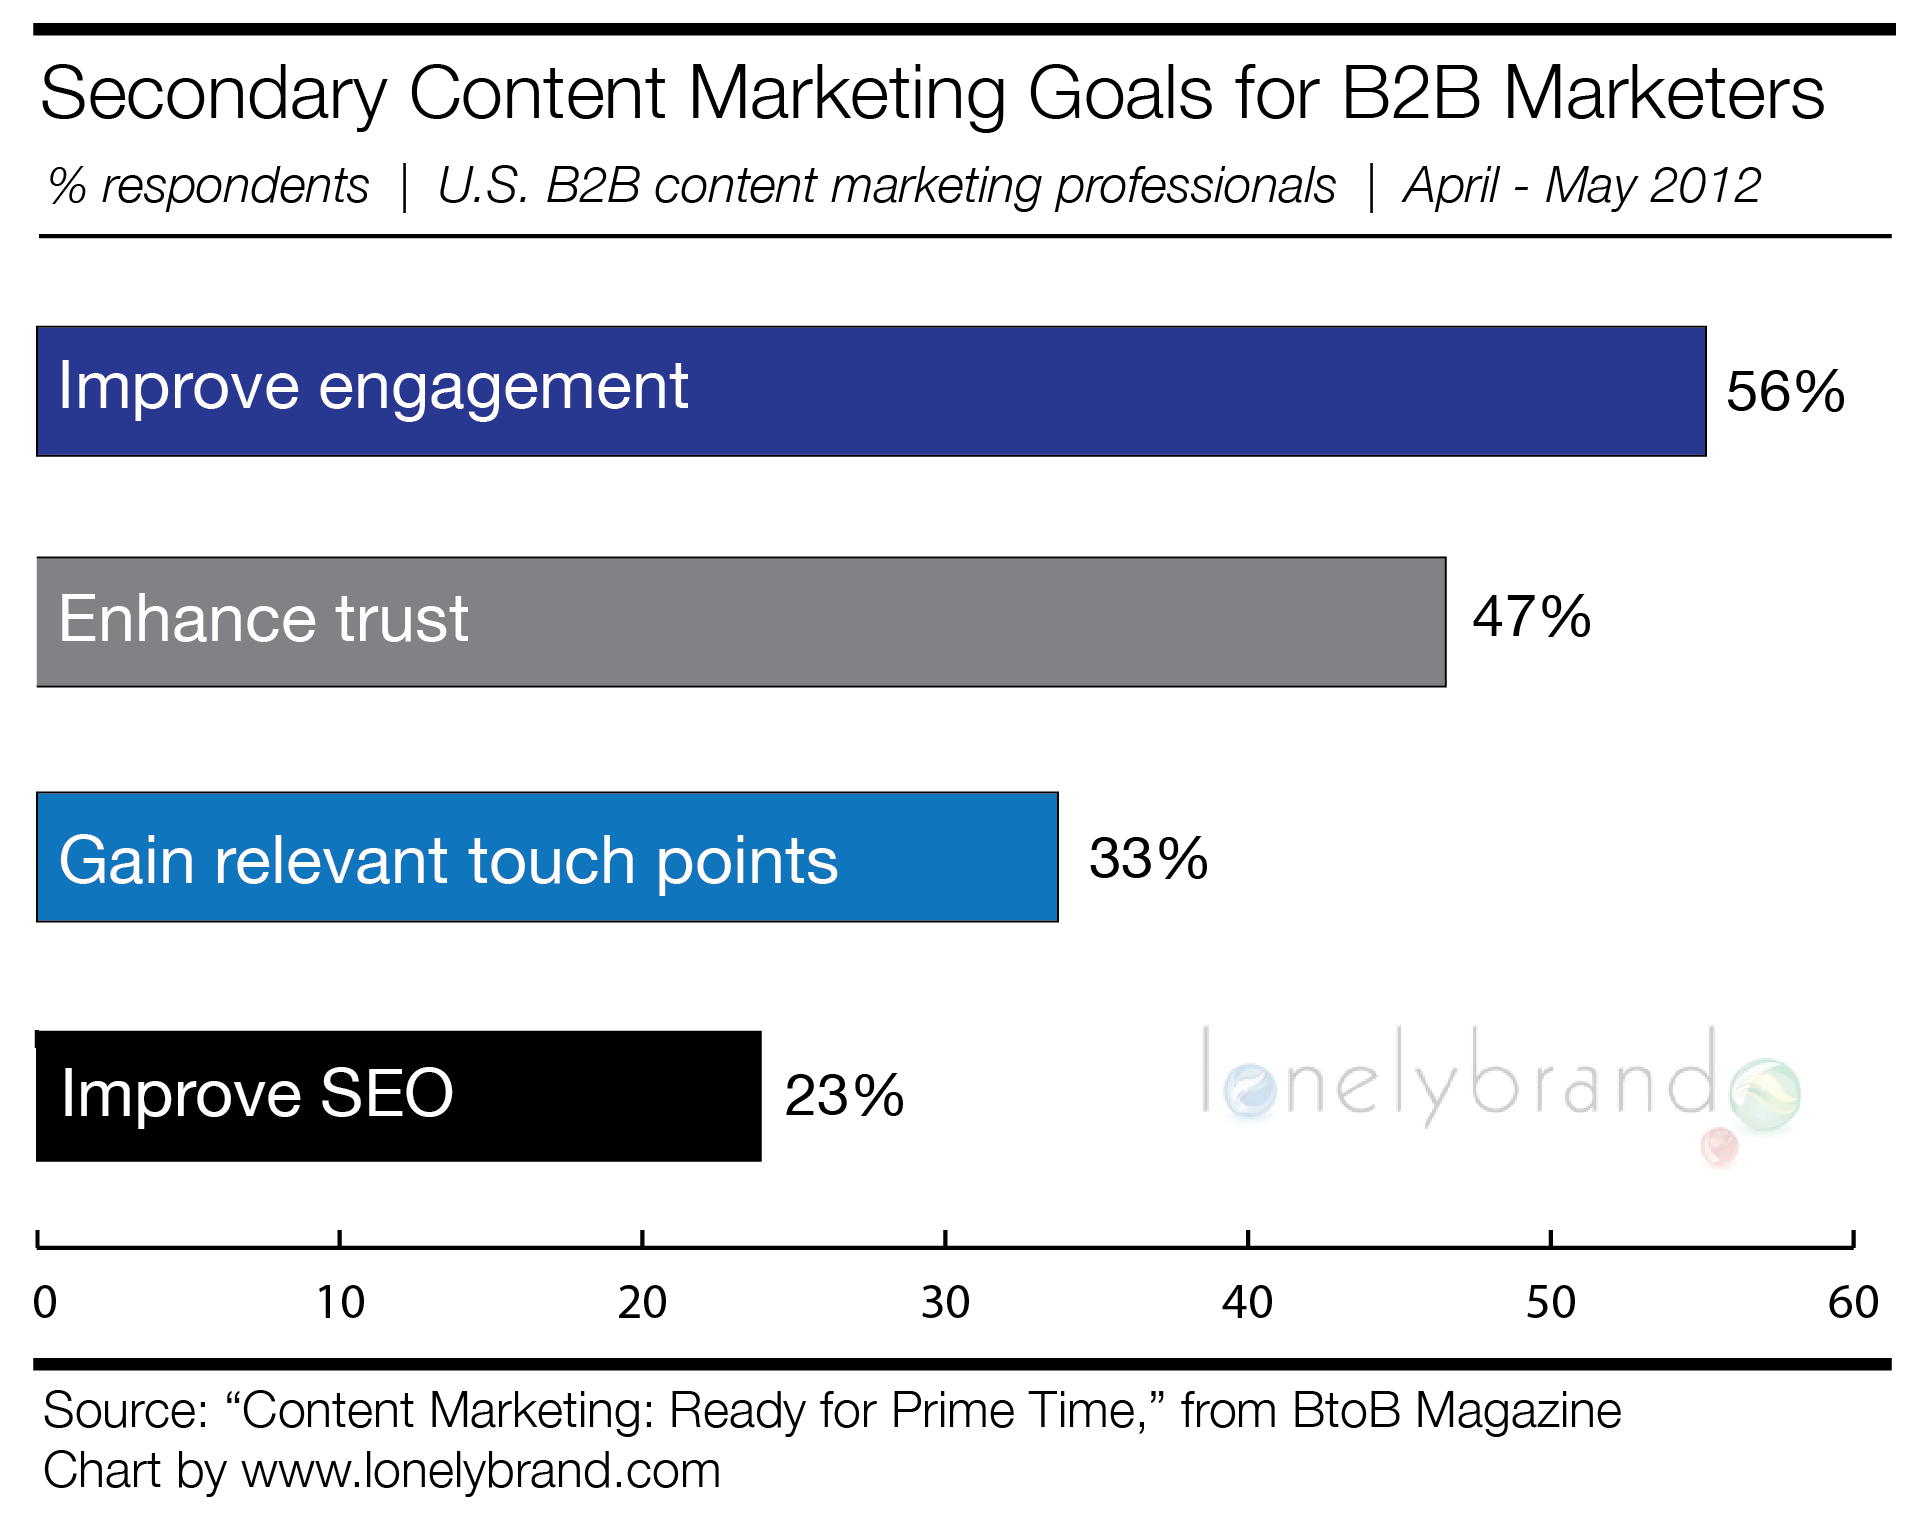 Secondary B2B Content Marketing Goals 2012